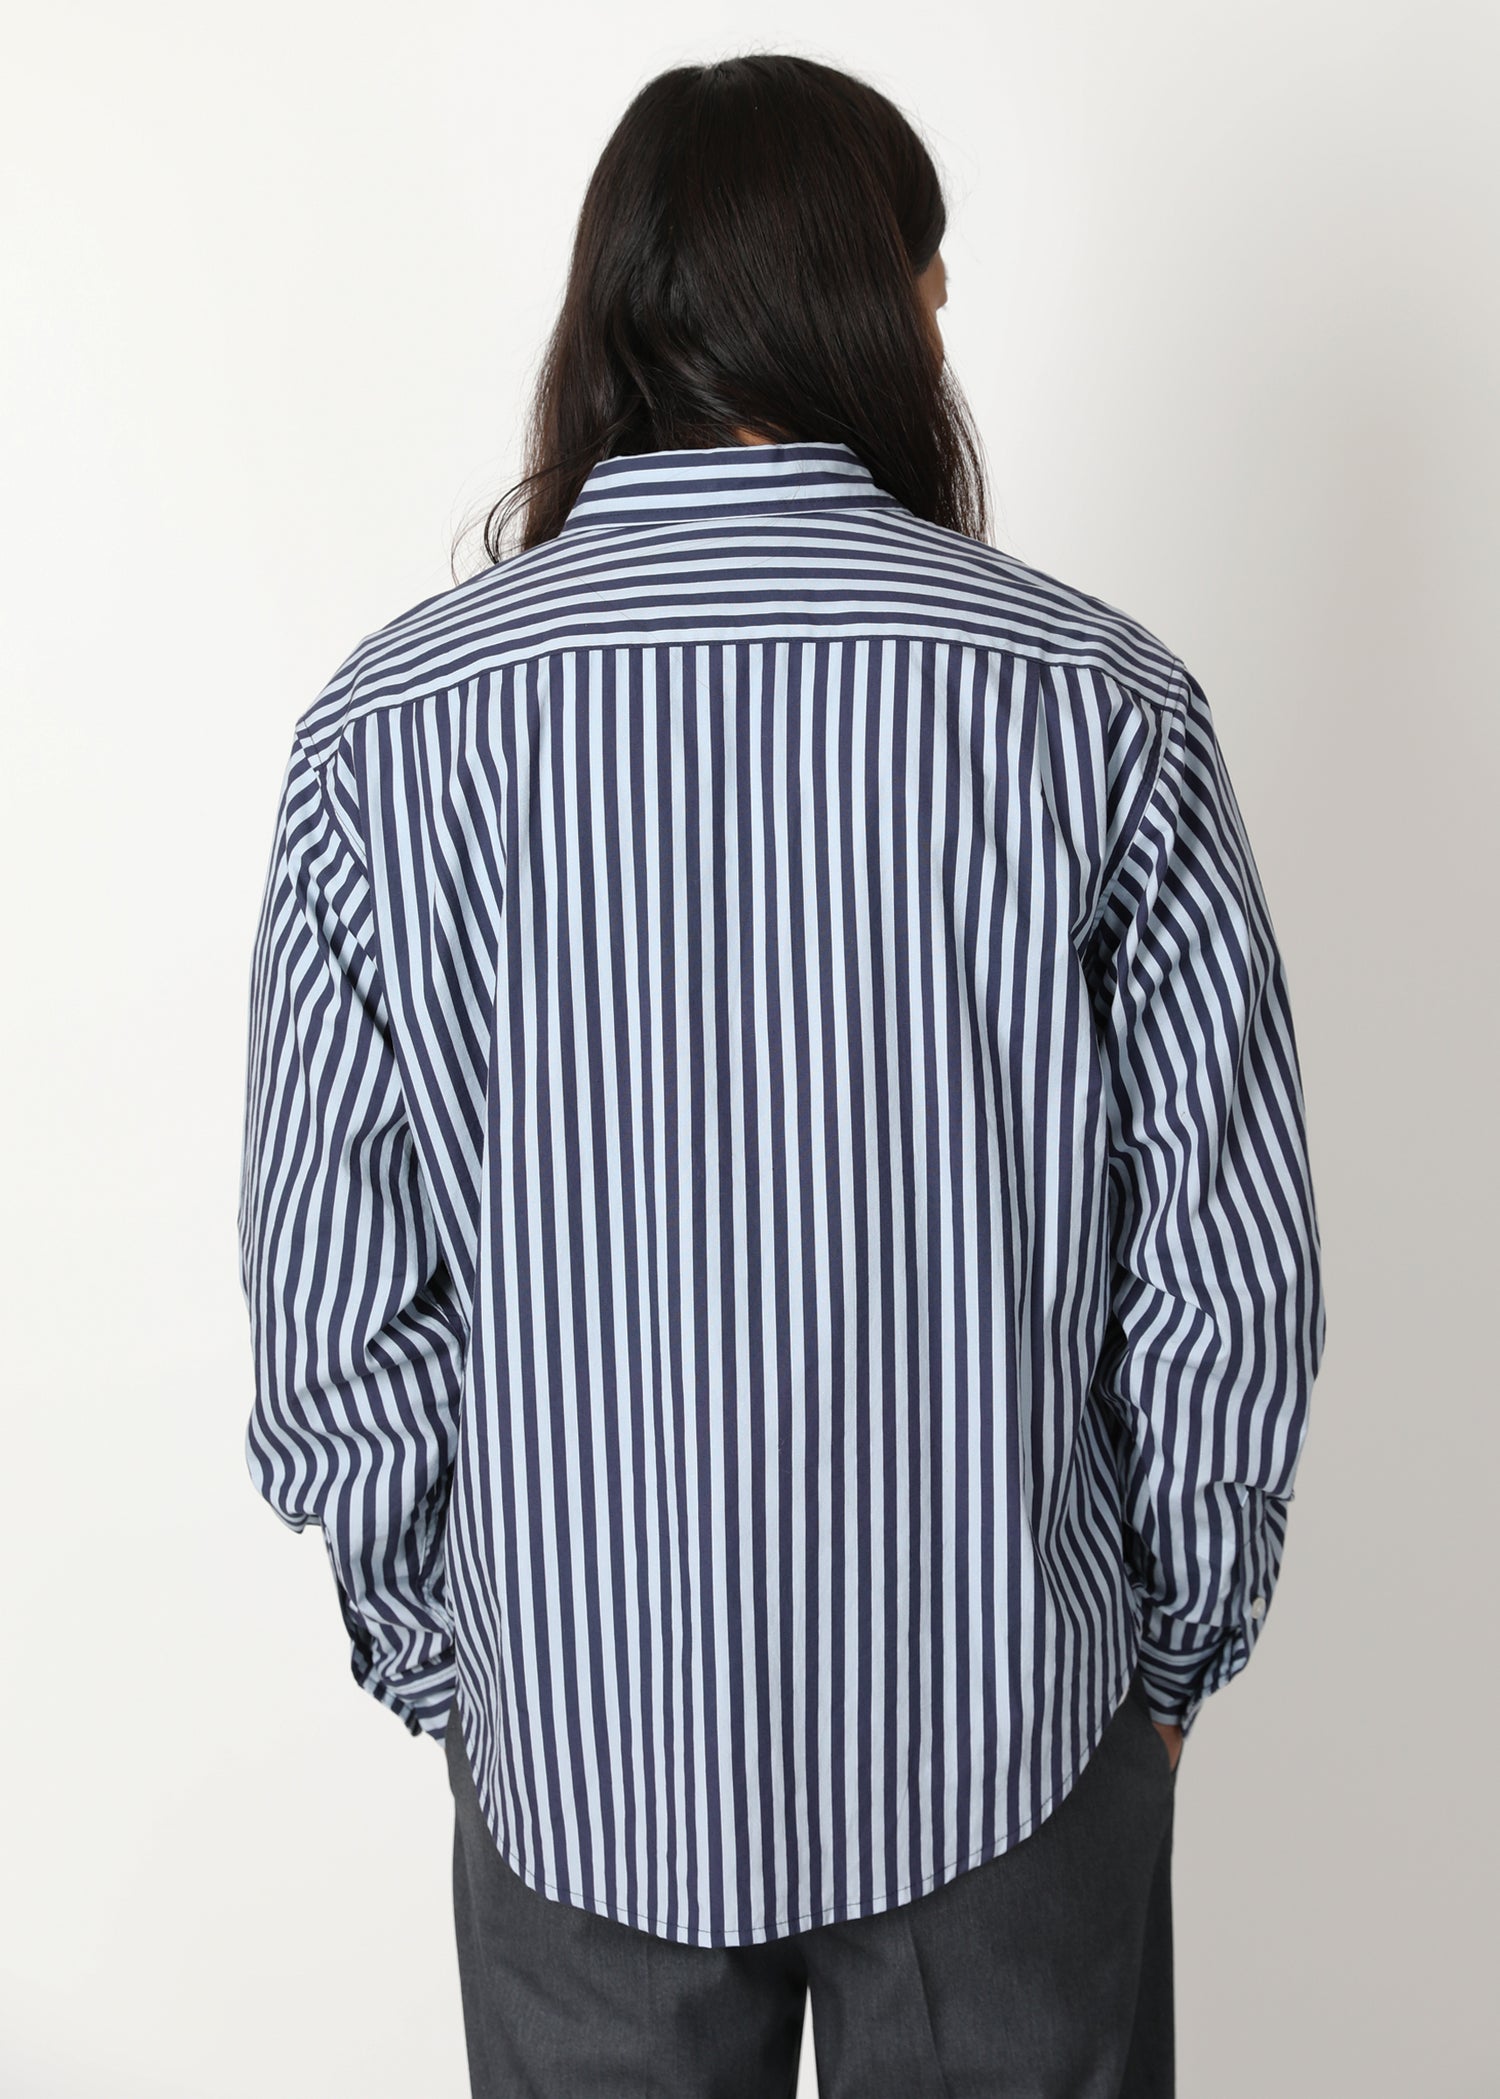 School Portrait Stripe Shirt - Ocean Blue